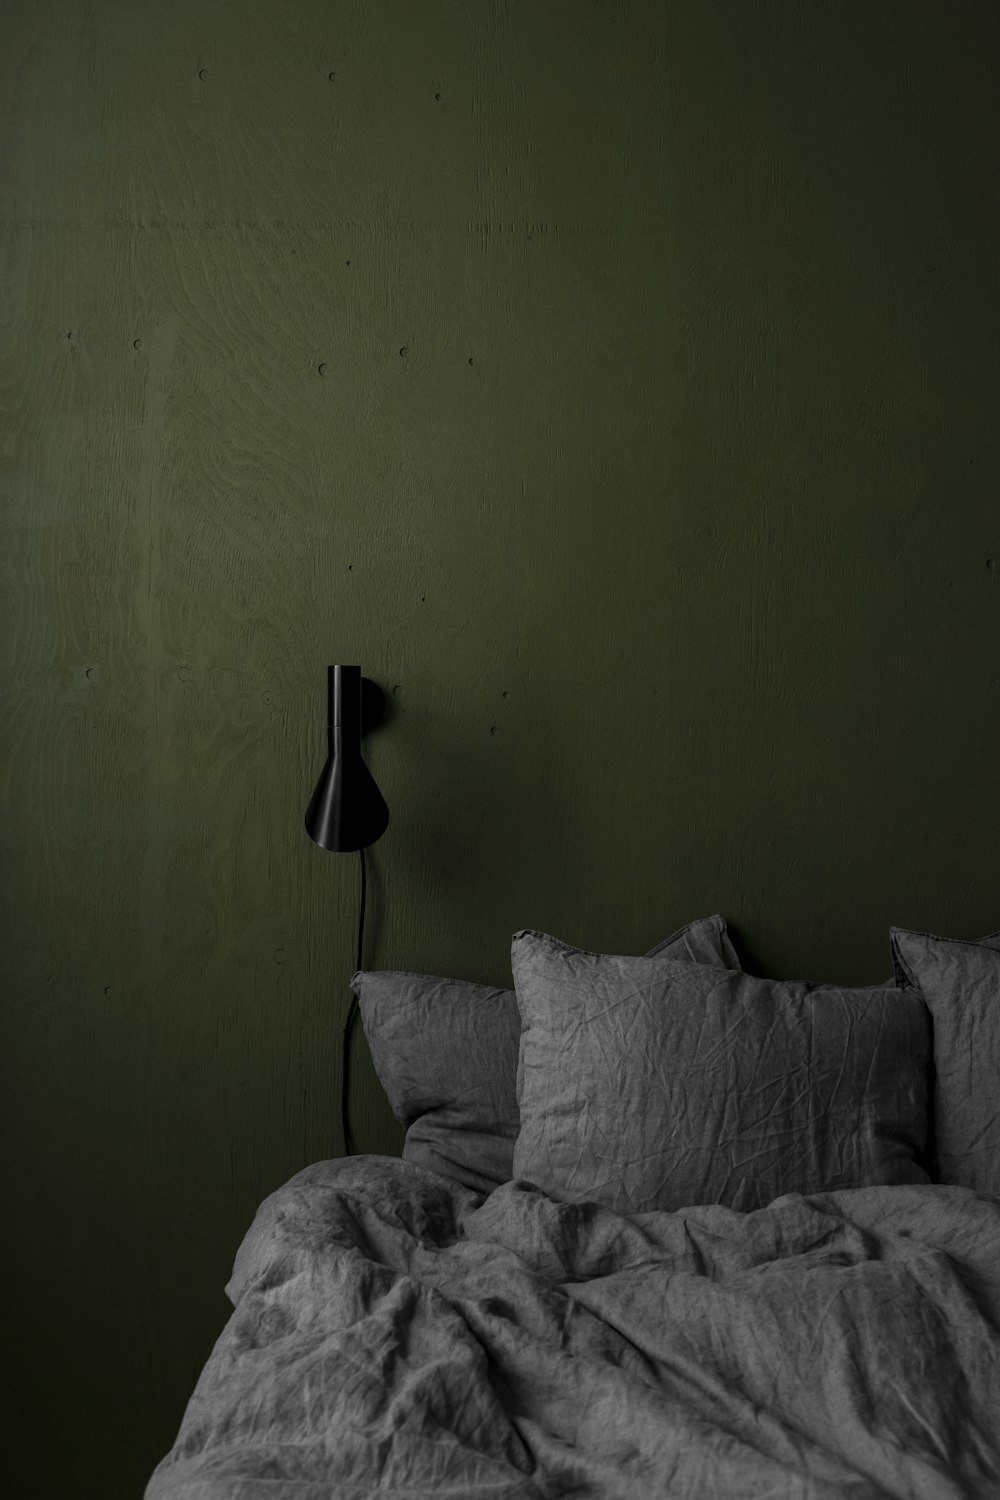 Una foto en blanco y negro de una cama en una habitación oscura